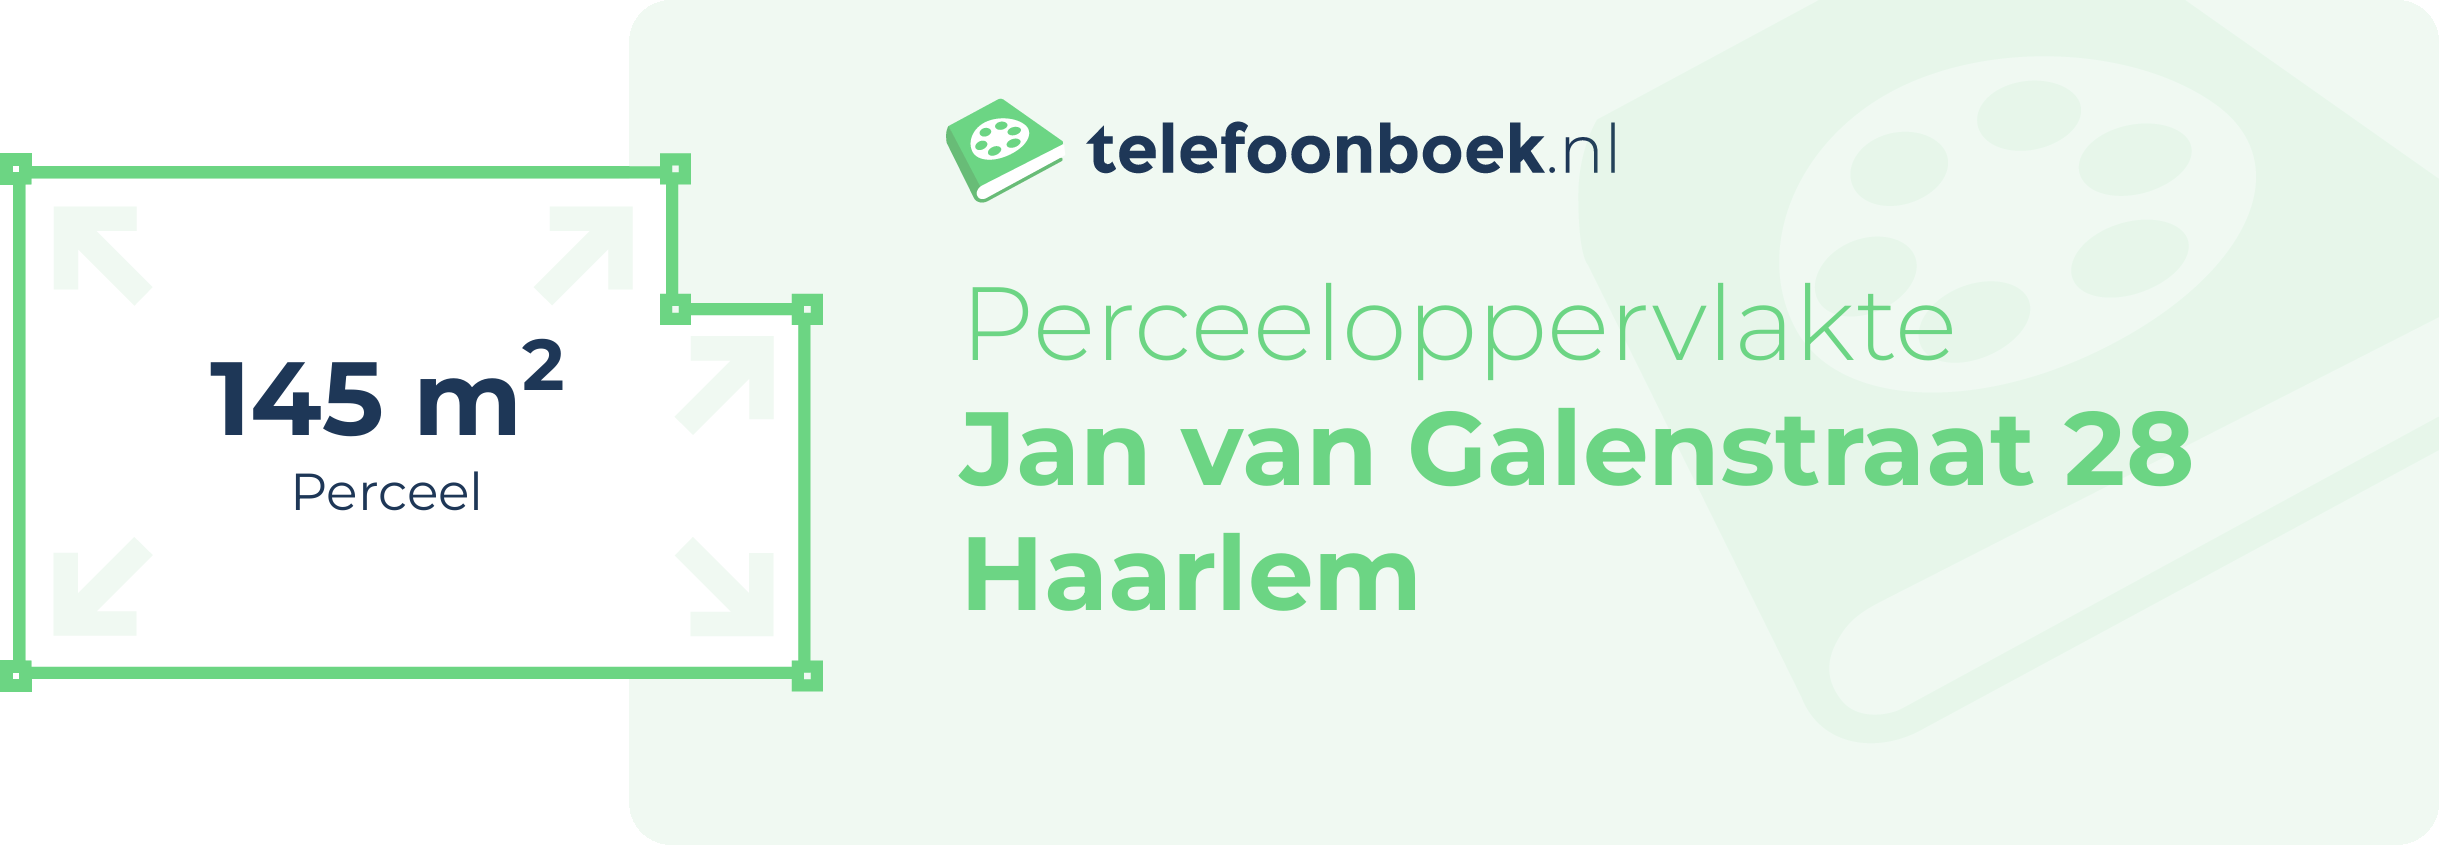 Perceeloppervlakte Jan Van Galenstraat 28 Haarlem